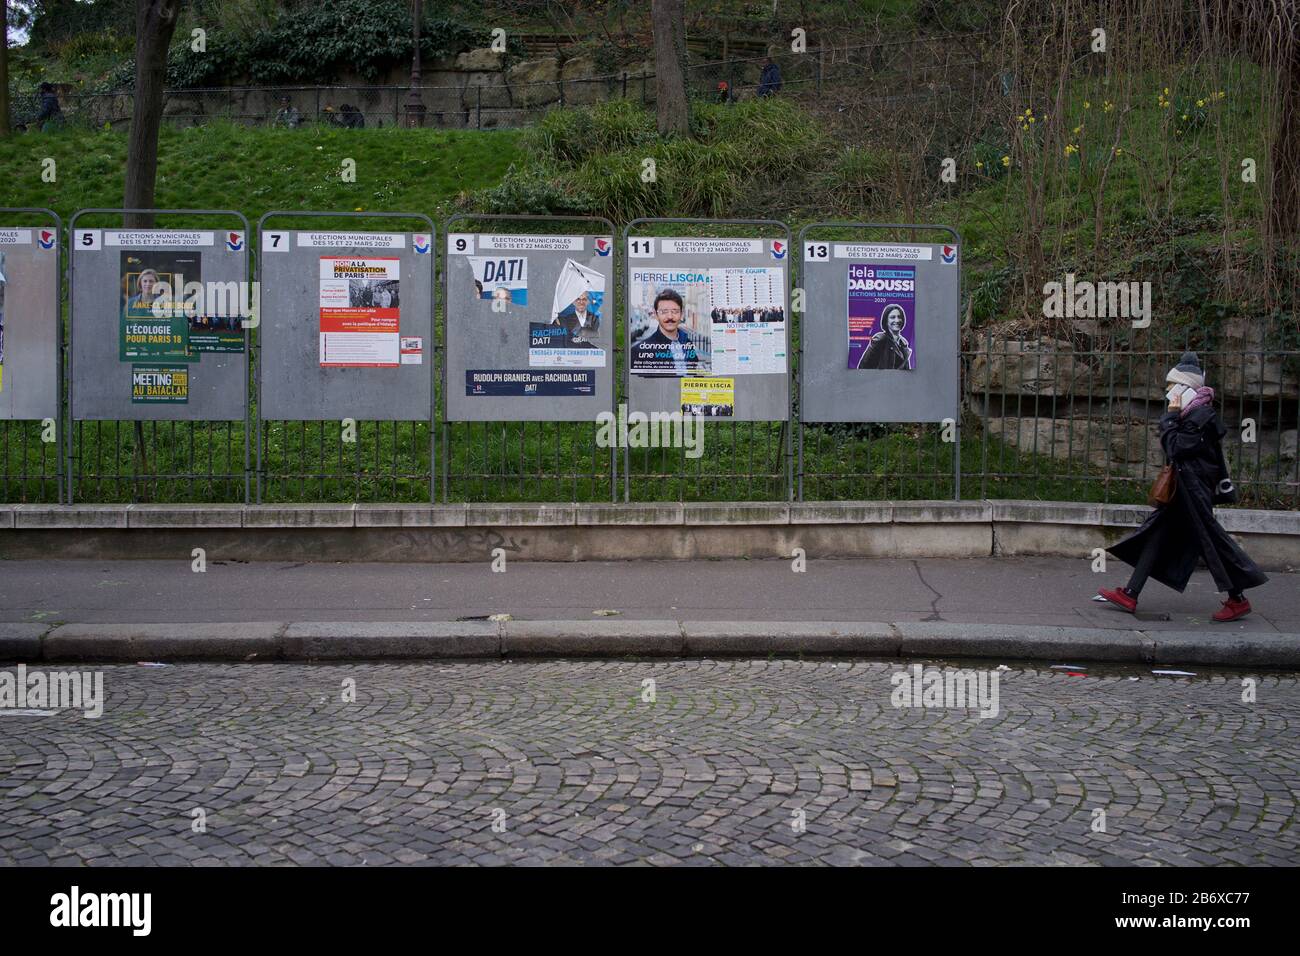 Mujer camina hacia paneles que muestran candidatos electorales en las elecciones municipales francesas, rue Ronsard, 75018 París, Francia, marzo de 2020 Foto de stock